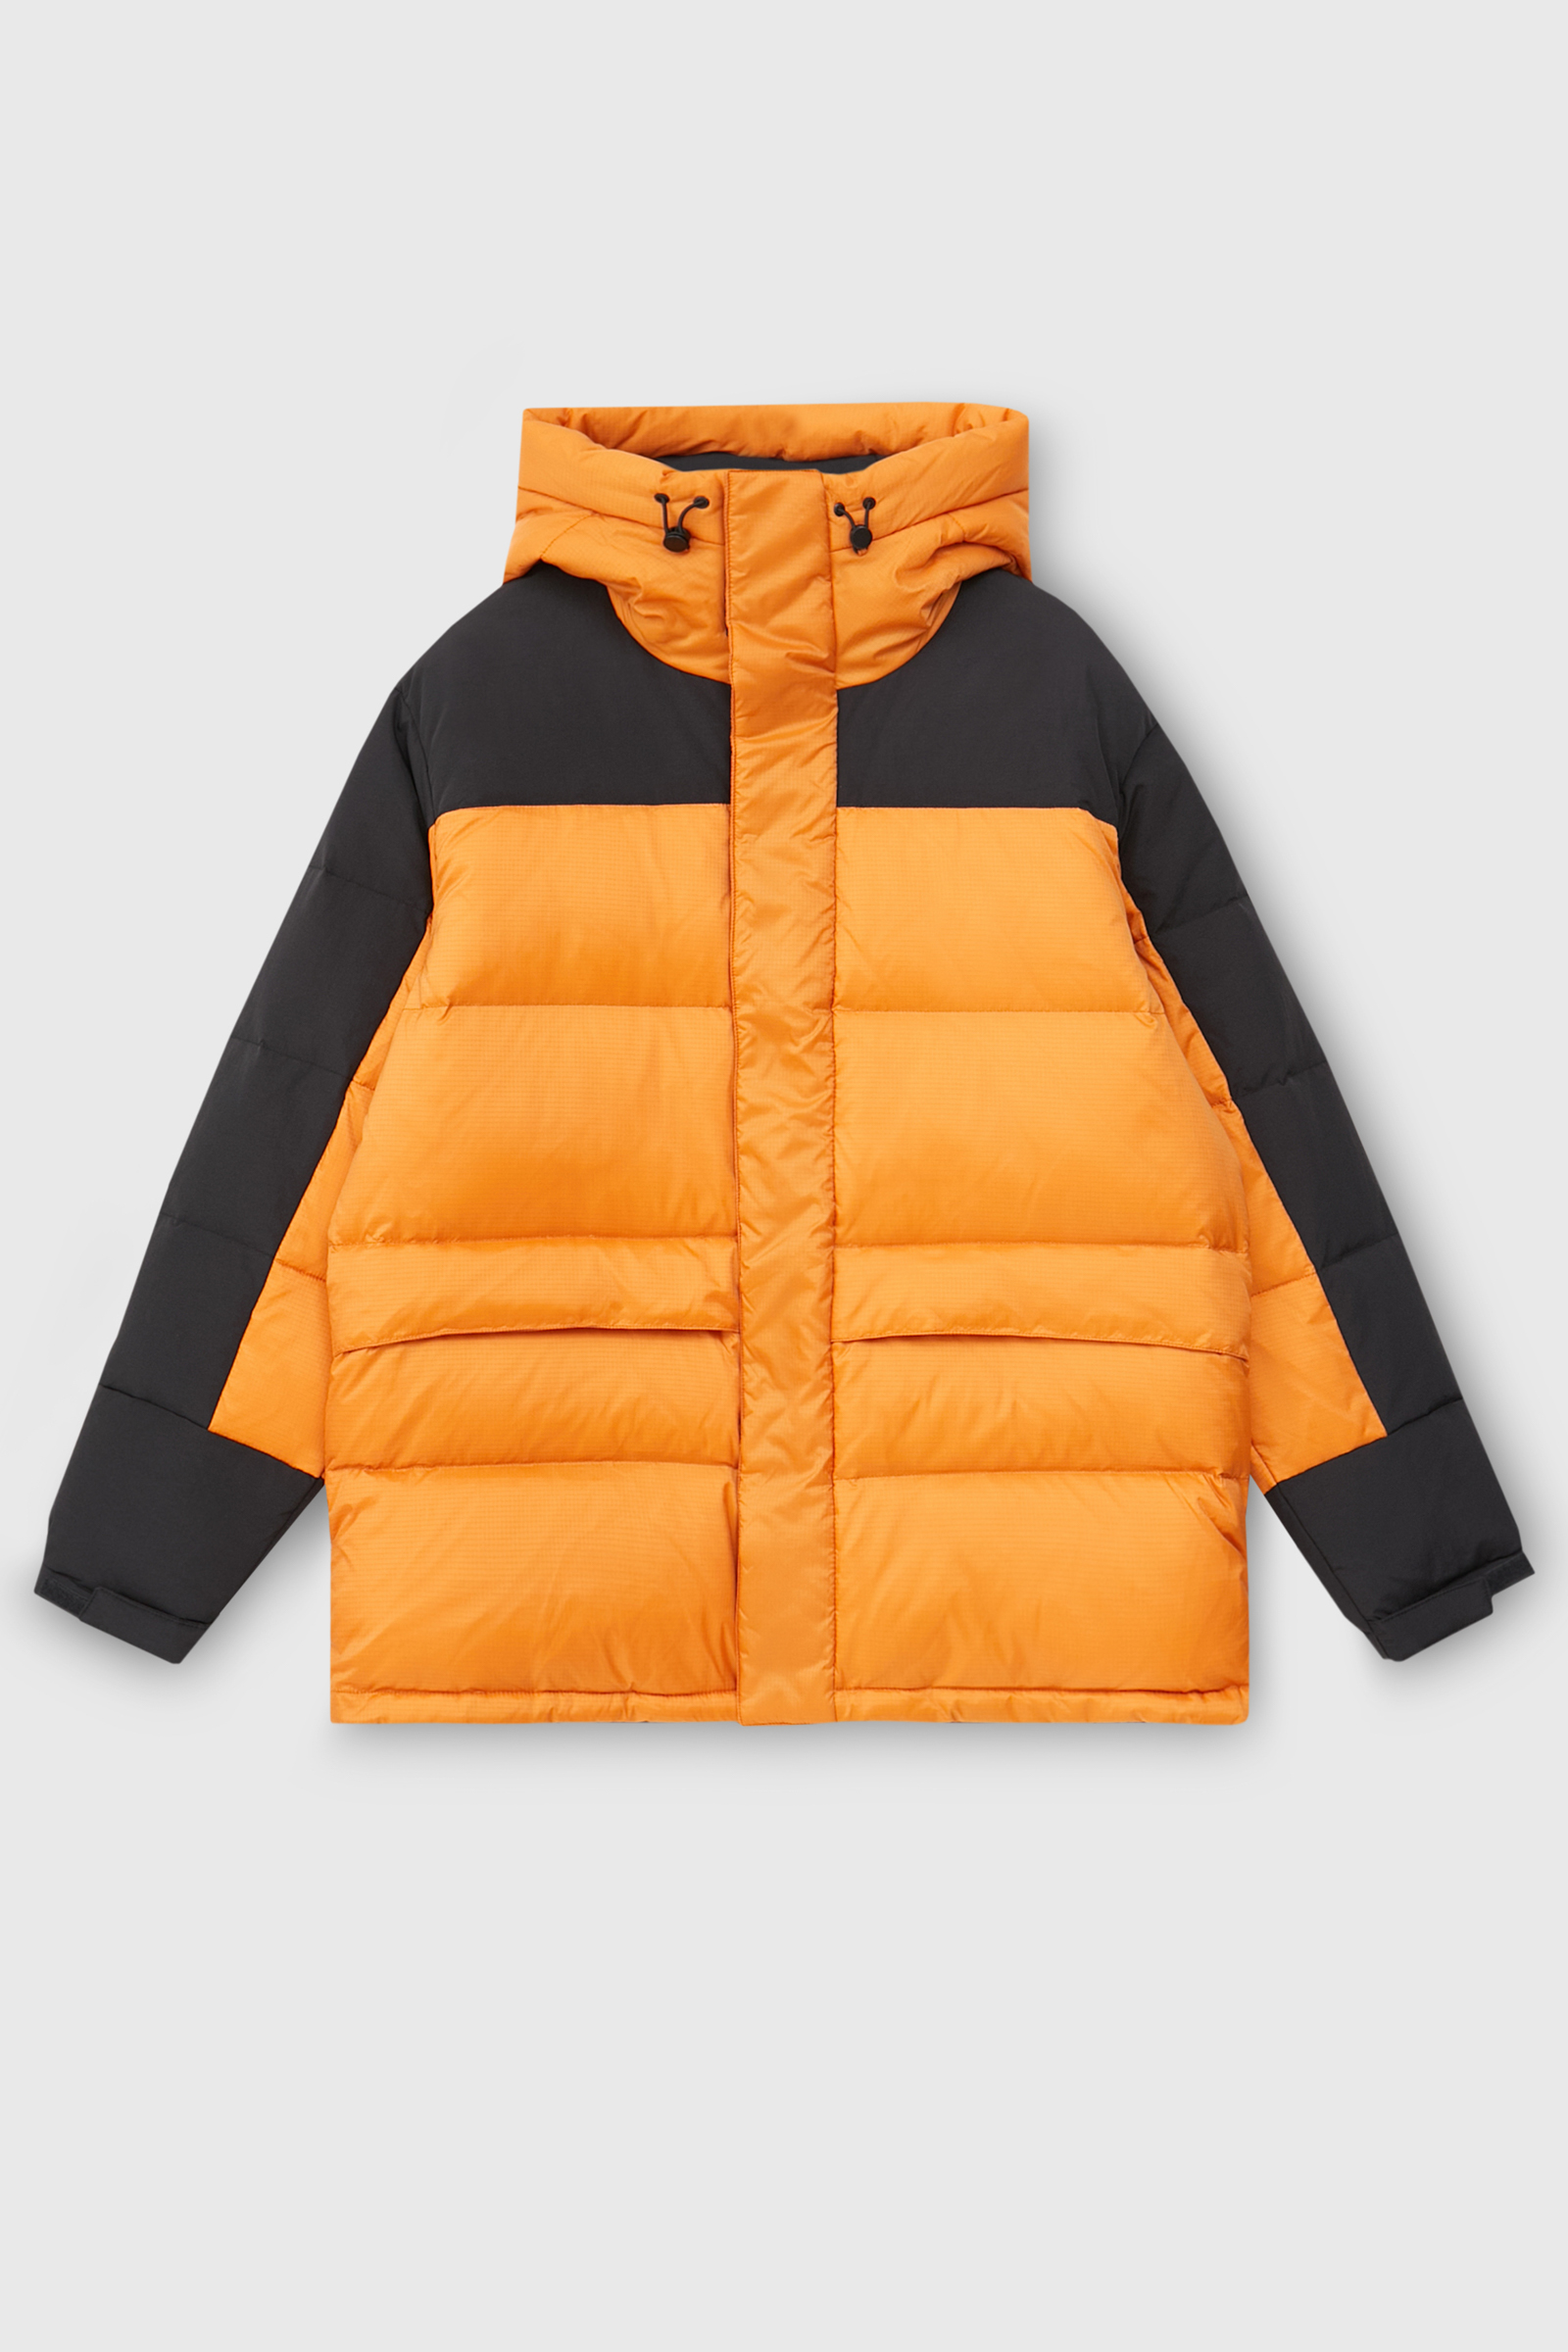 Куртка мужская Finn Flare FAC23004 оранжевая 2XL